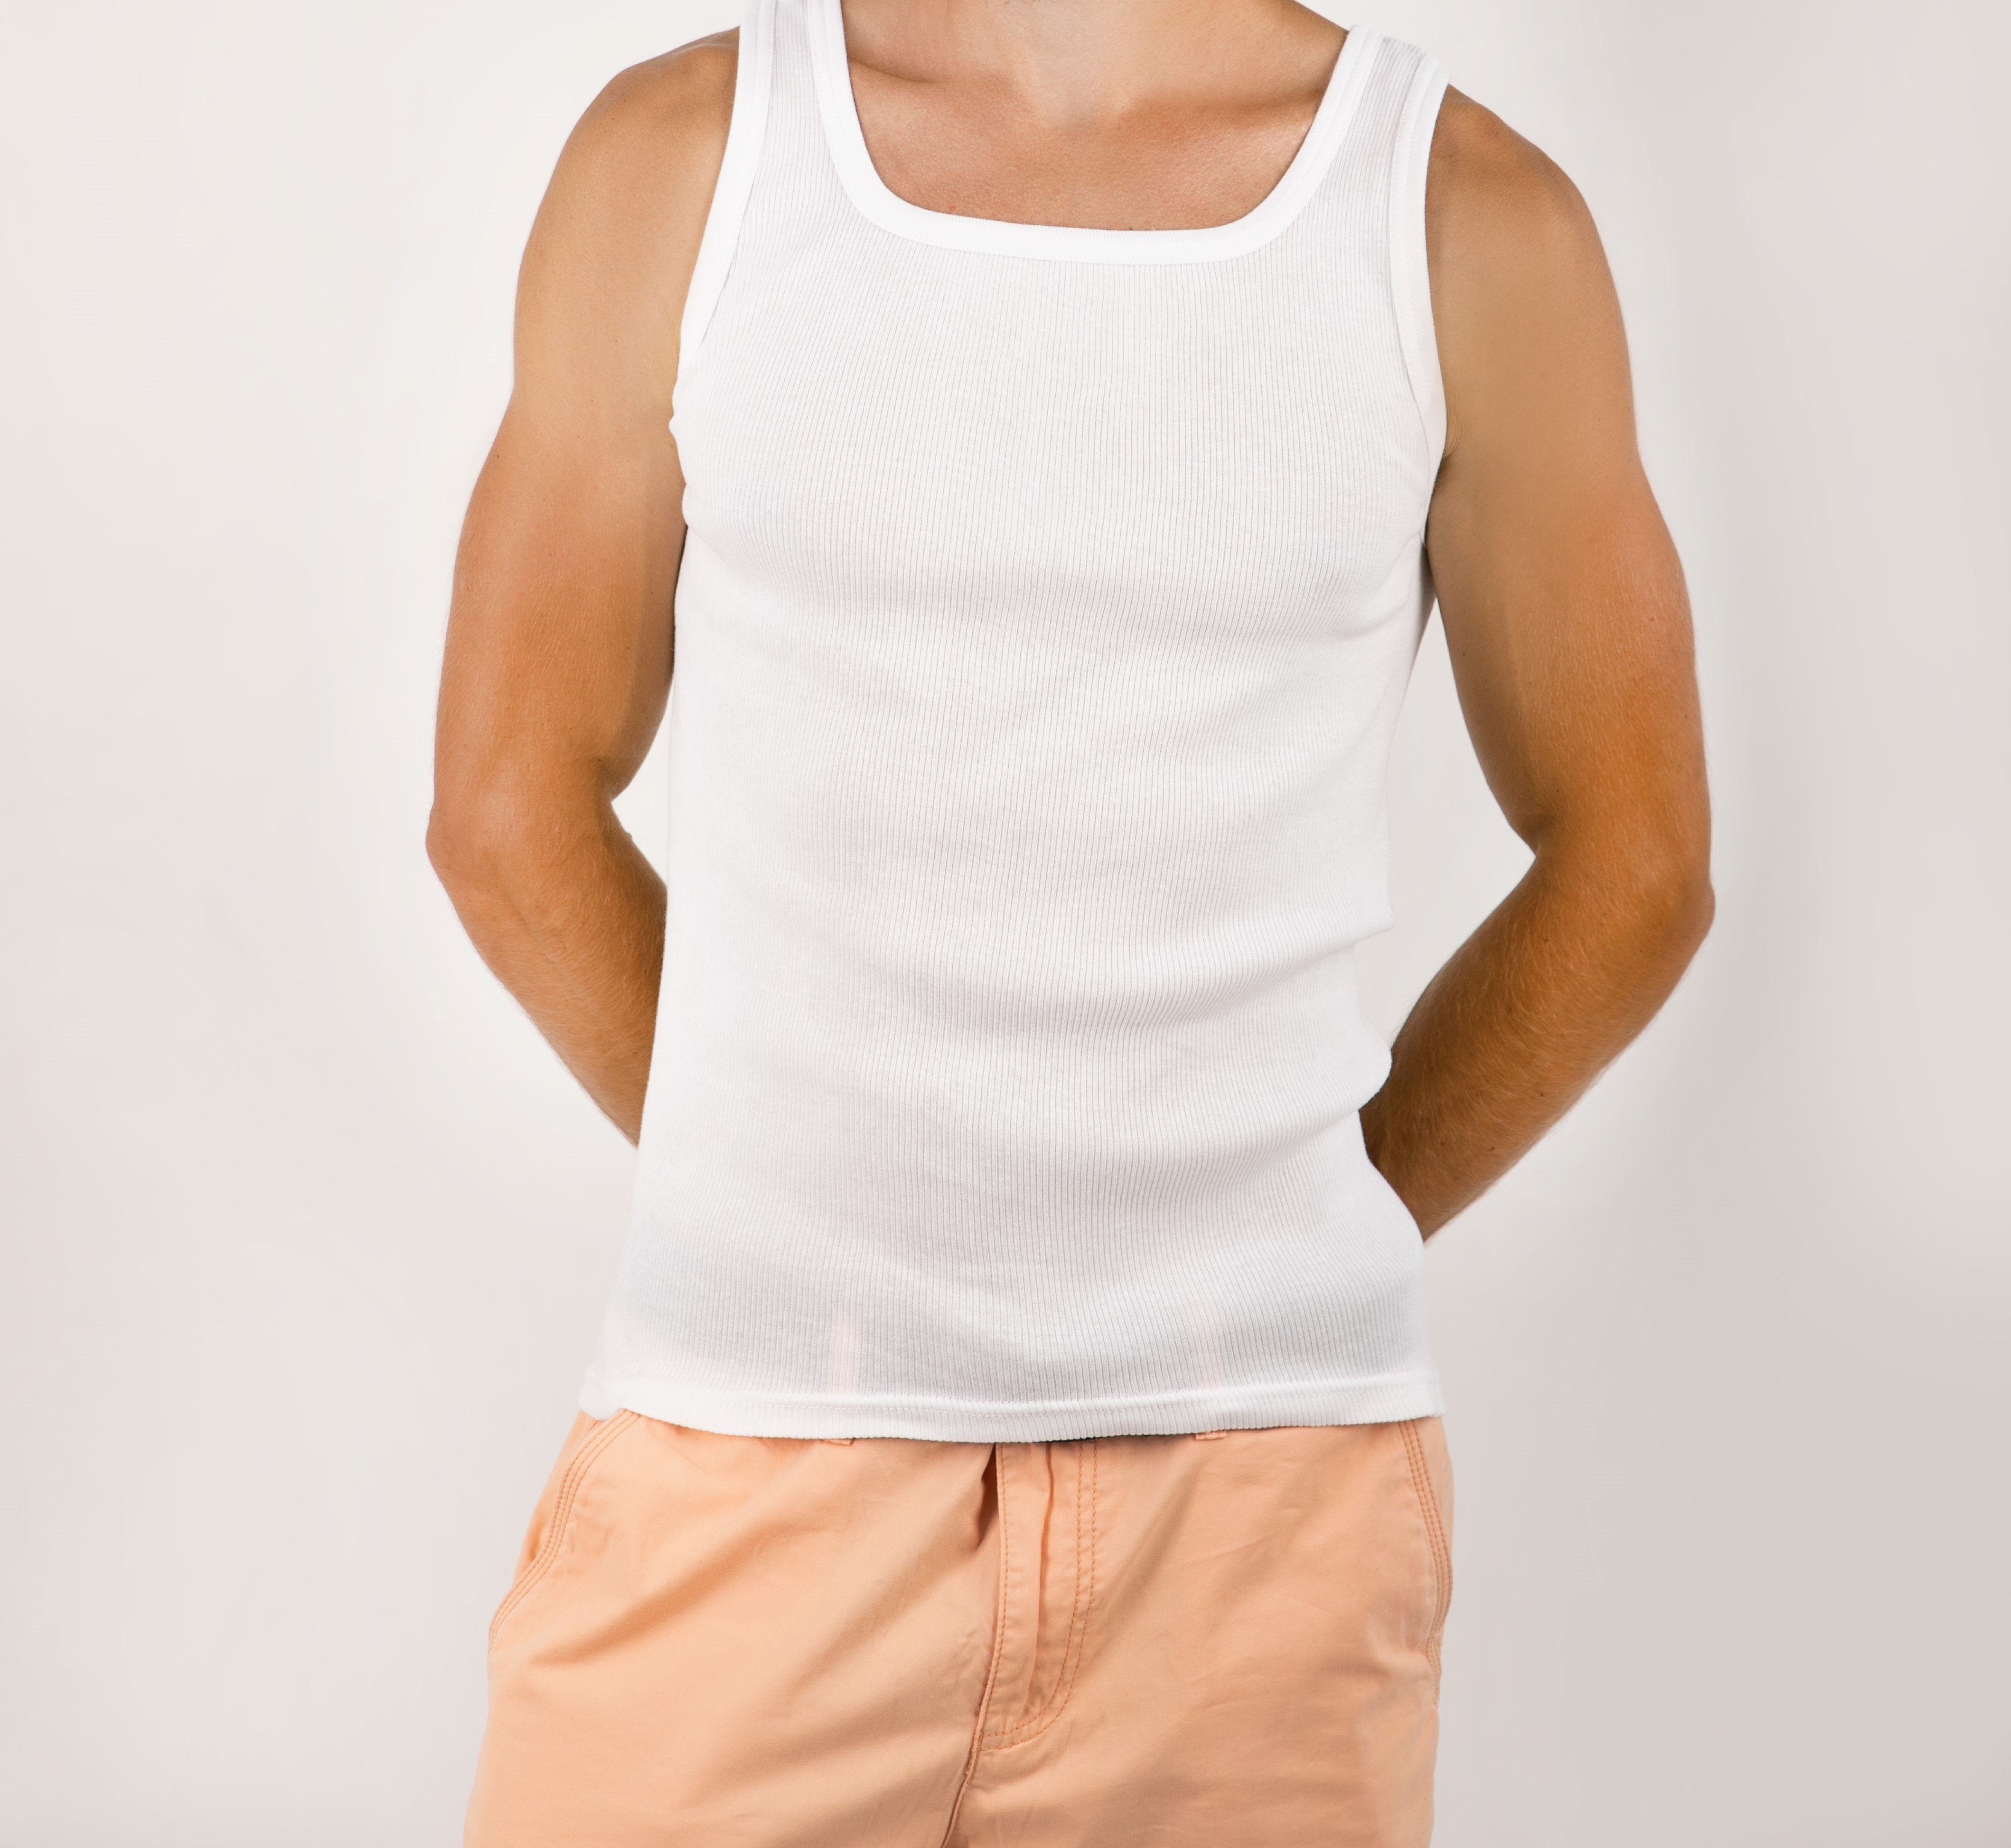 STTS Unterhemd 3-er Pack Herrenunterhemden 100% Weiß Top-Qualität Feinripp Baumwolle